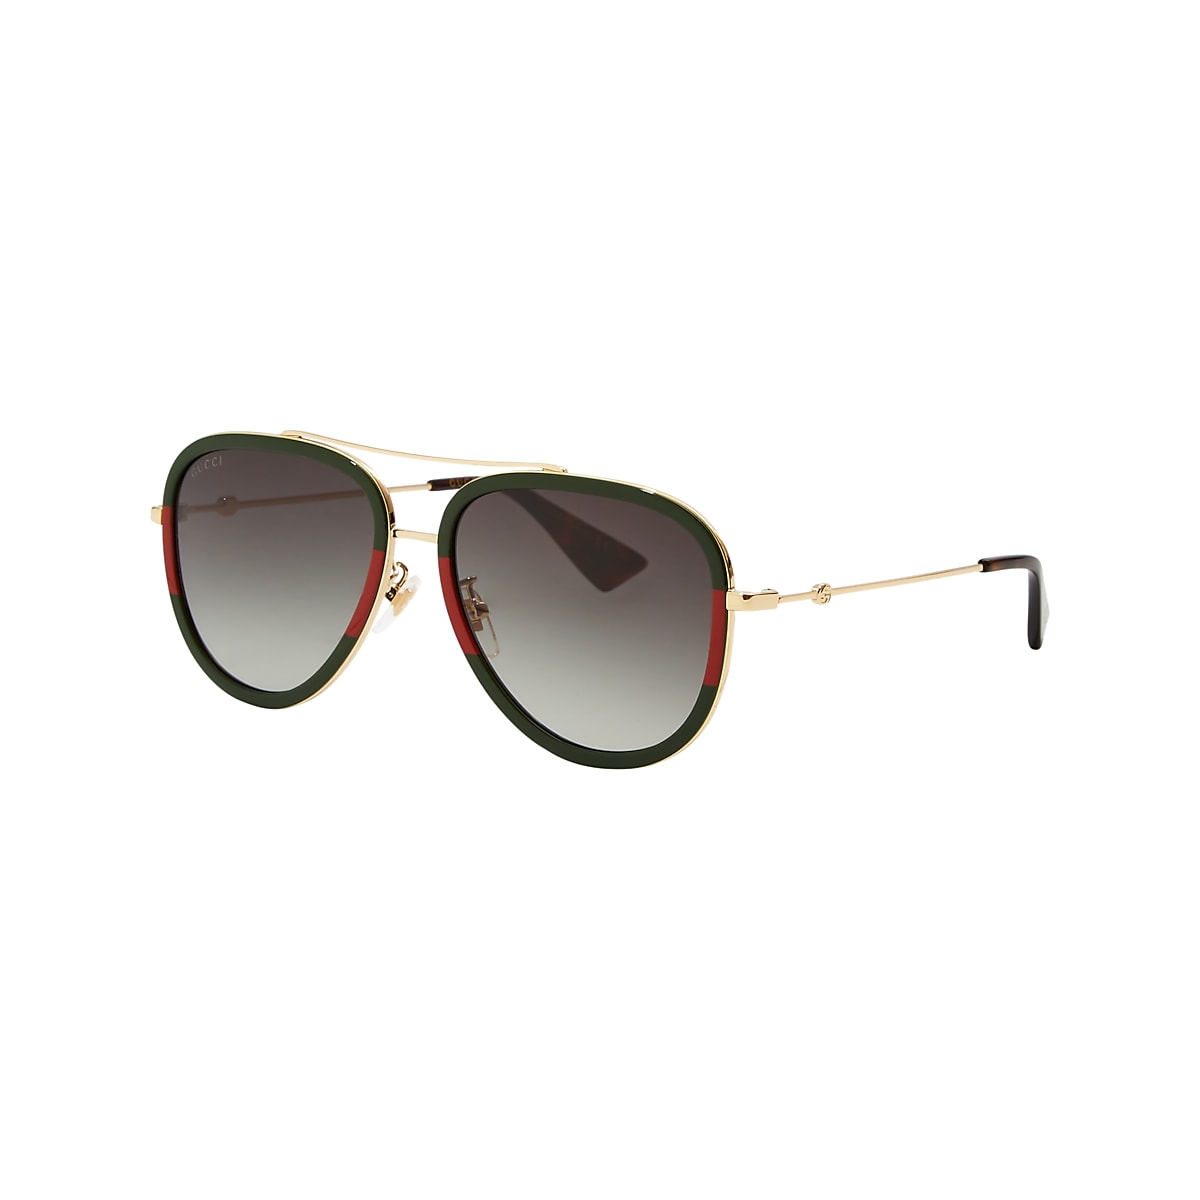 Meander nedbrydes Uforglemmelig Gucci GG0062S Green & Gold Sunglasses | Sunglass Hut USA